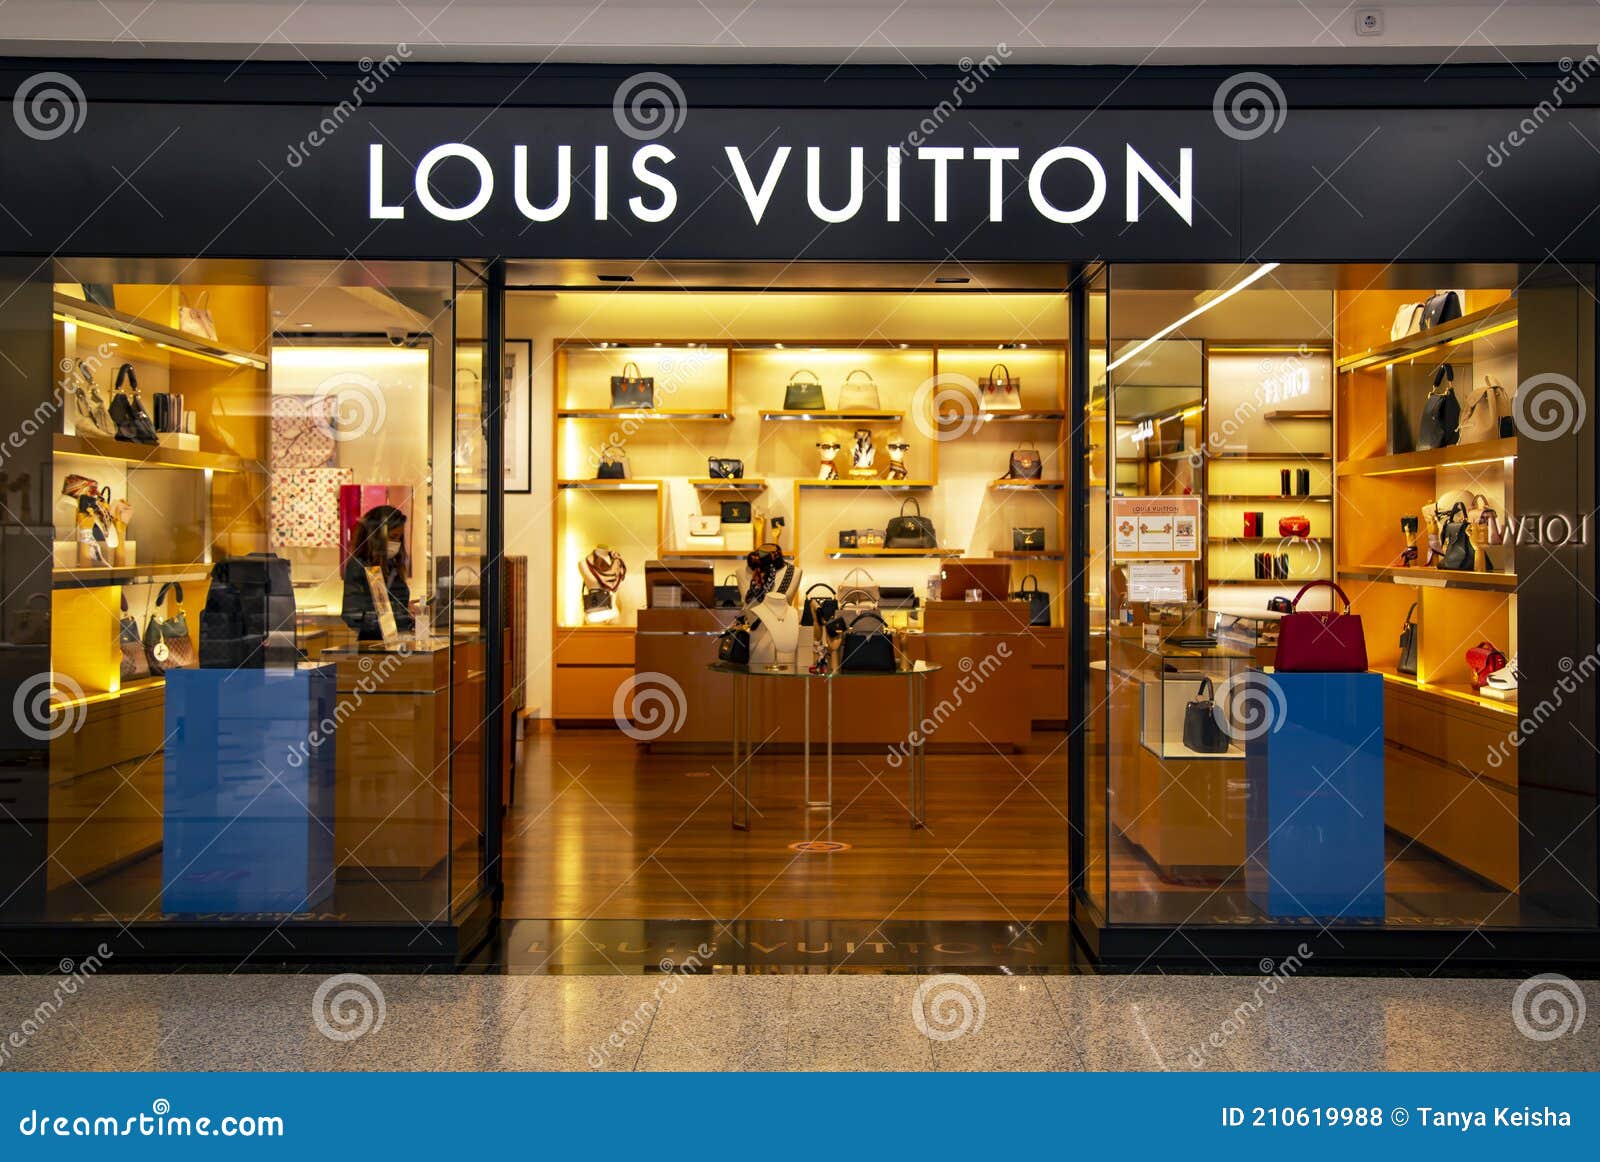 Tienda Louis Vuitton En Un Centro Comercial El Corte Ingles De Barcelona  Foto de archivo editorial - Imagen de ciudad, marca: 210619988